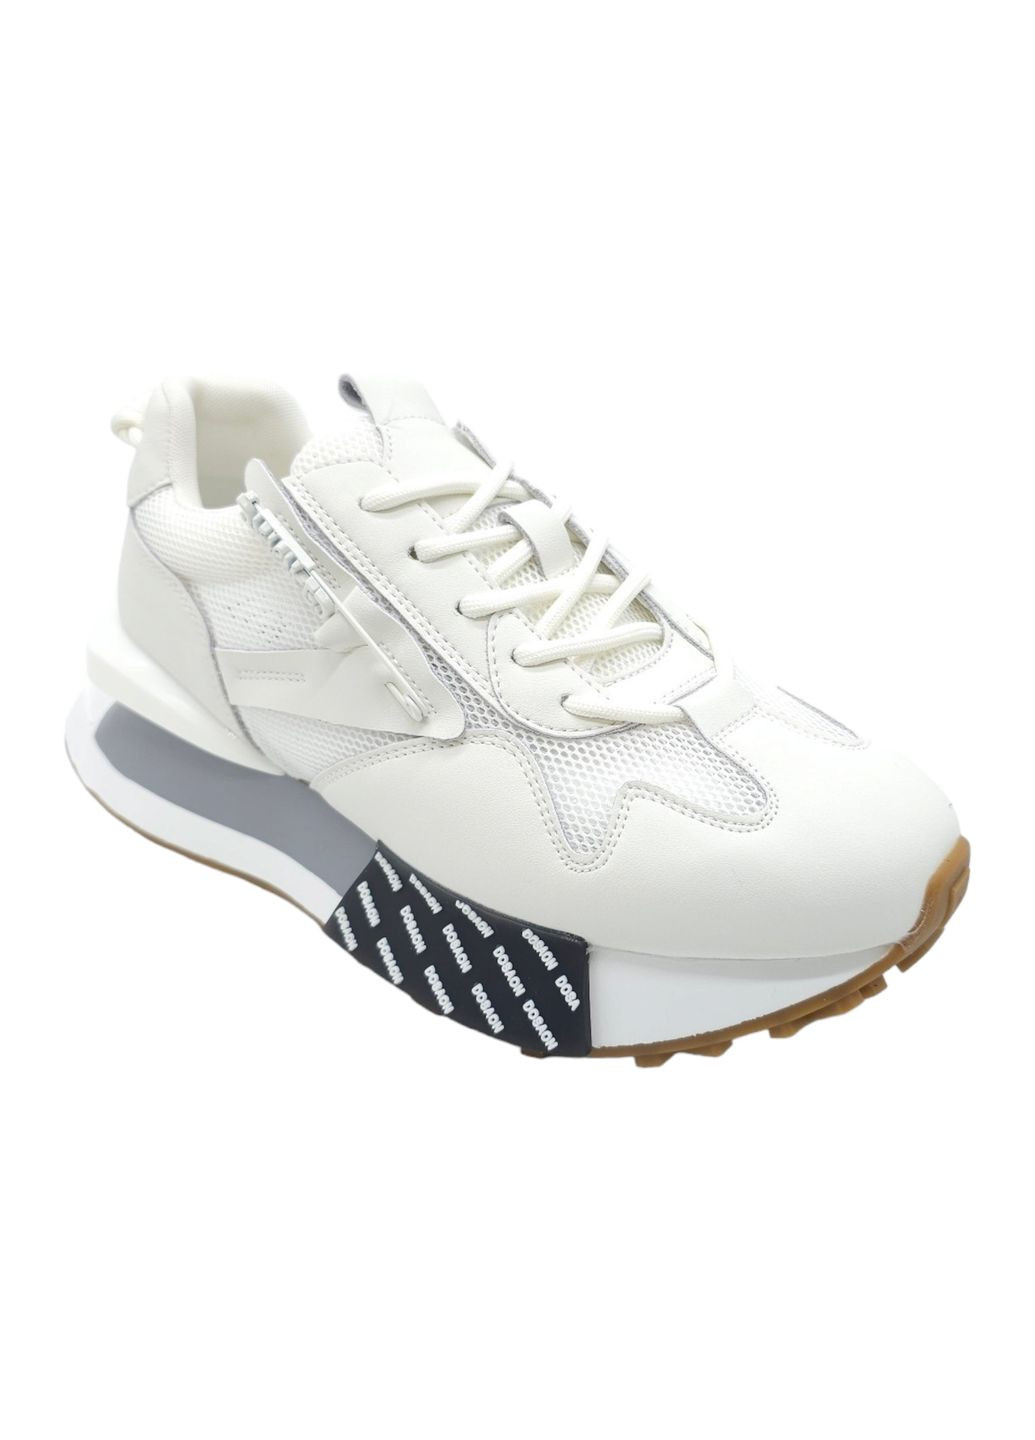 Белые всесезонные женские кроссовки белые кожаные l-12-44 23 см(р) Lonza